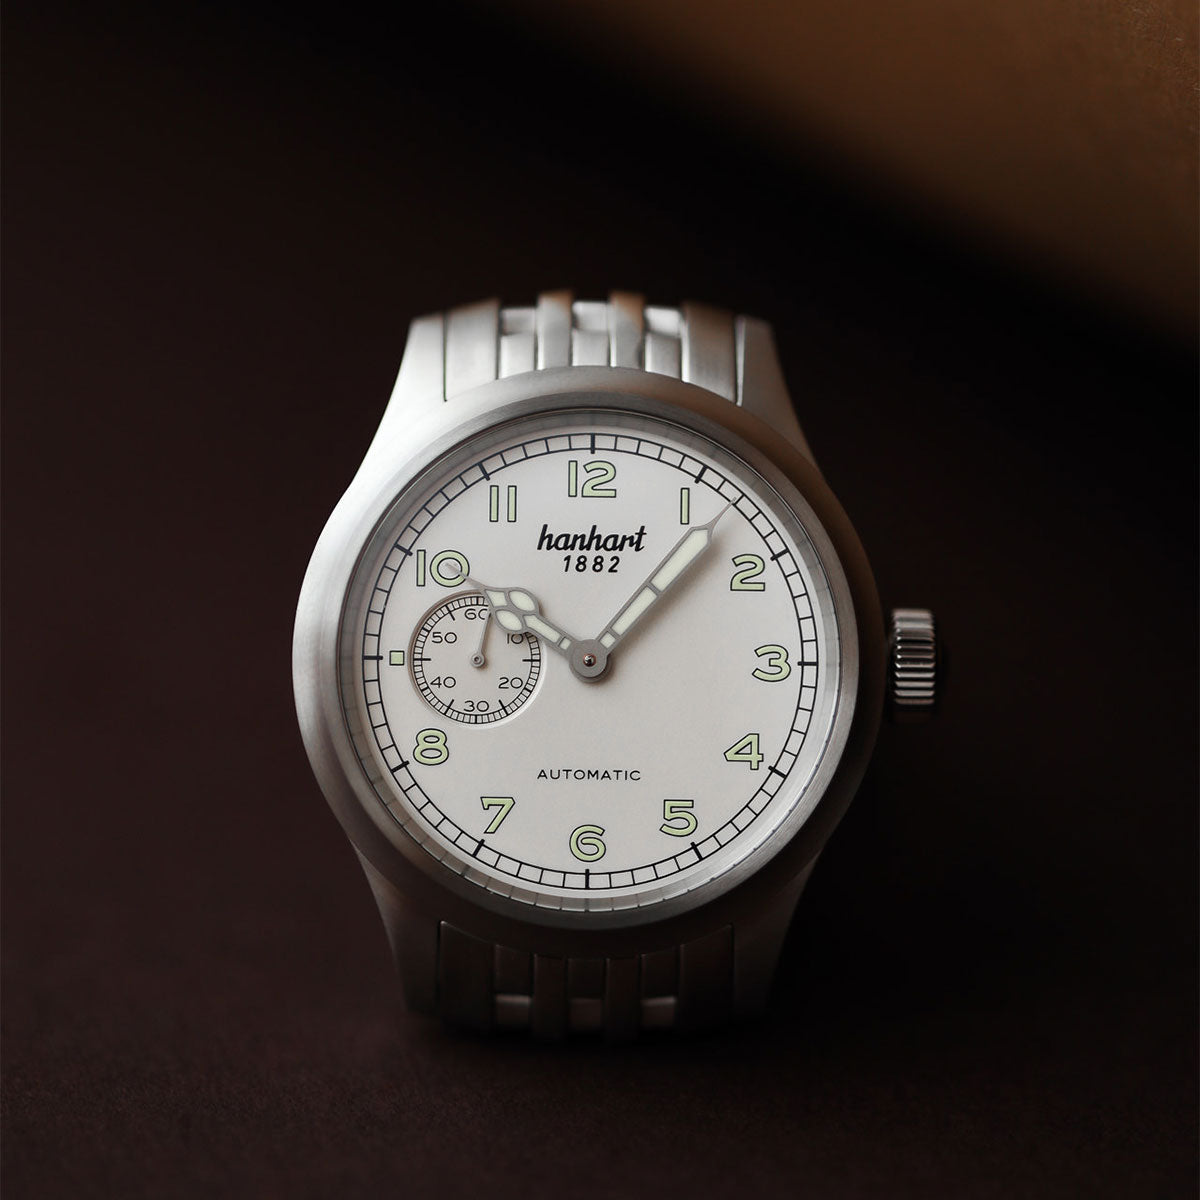 Hanhart 1882 watch - Pioneer Preventor9